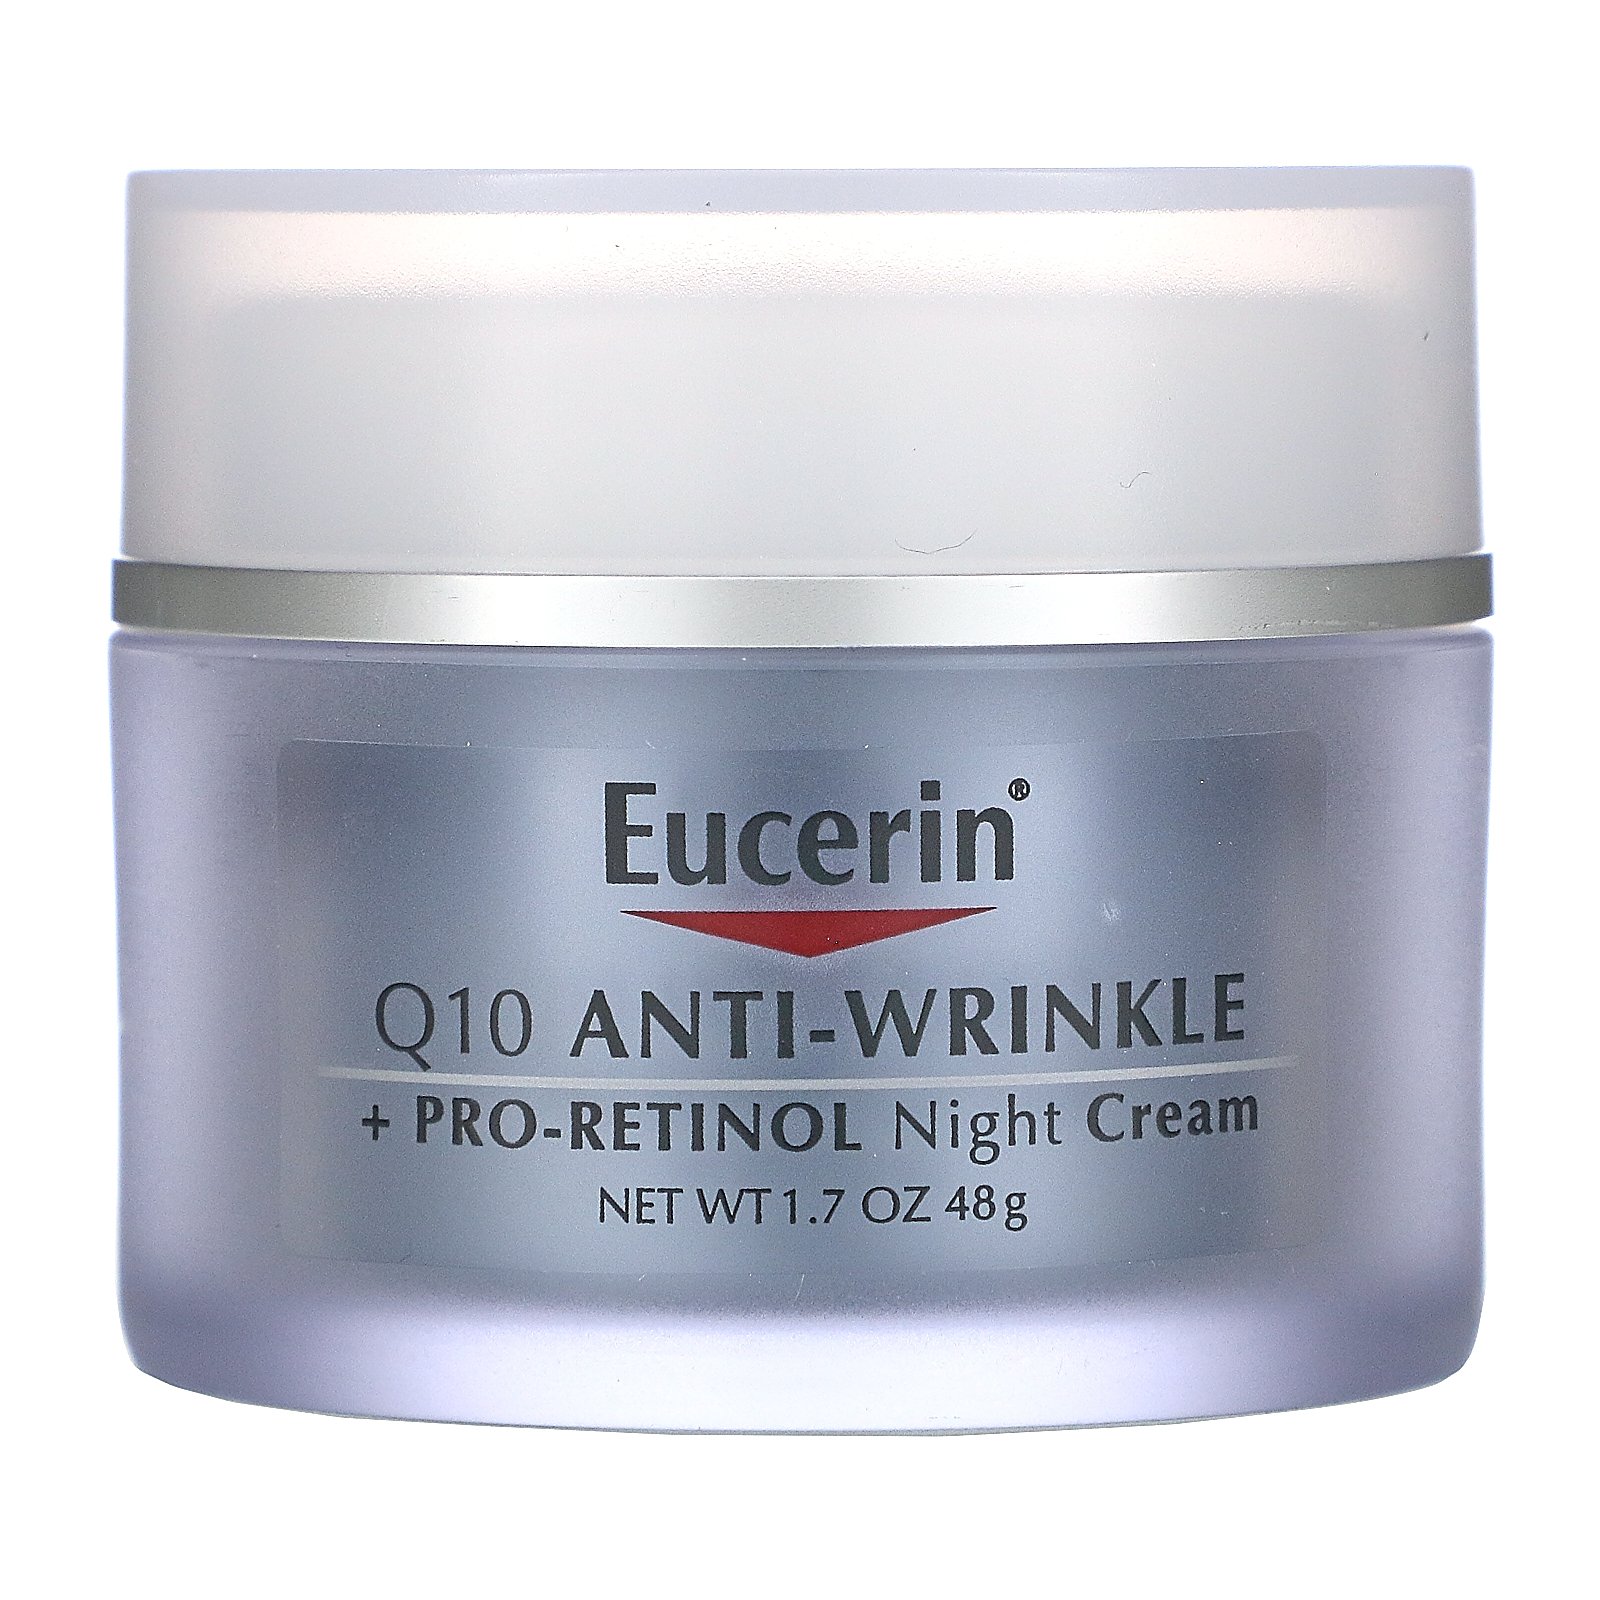 eucerin anti wrinkle night cream sav nikon suisse anti aging